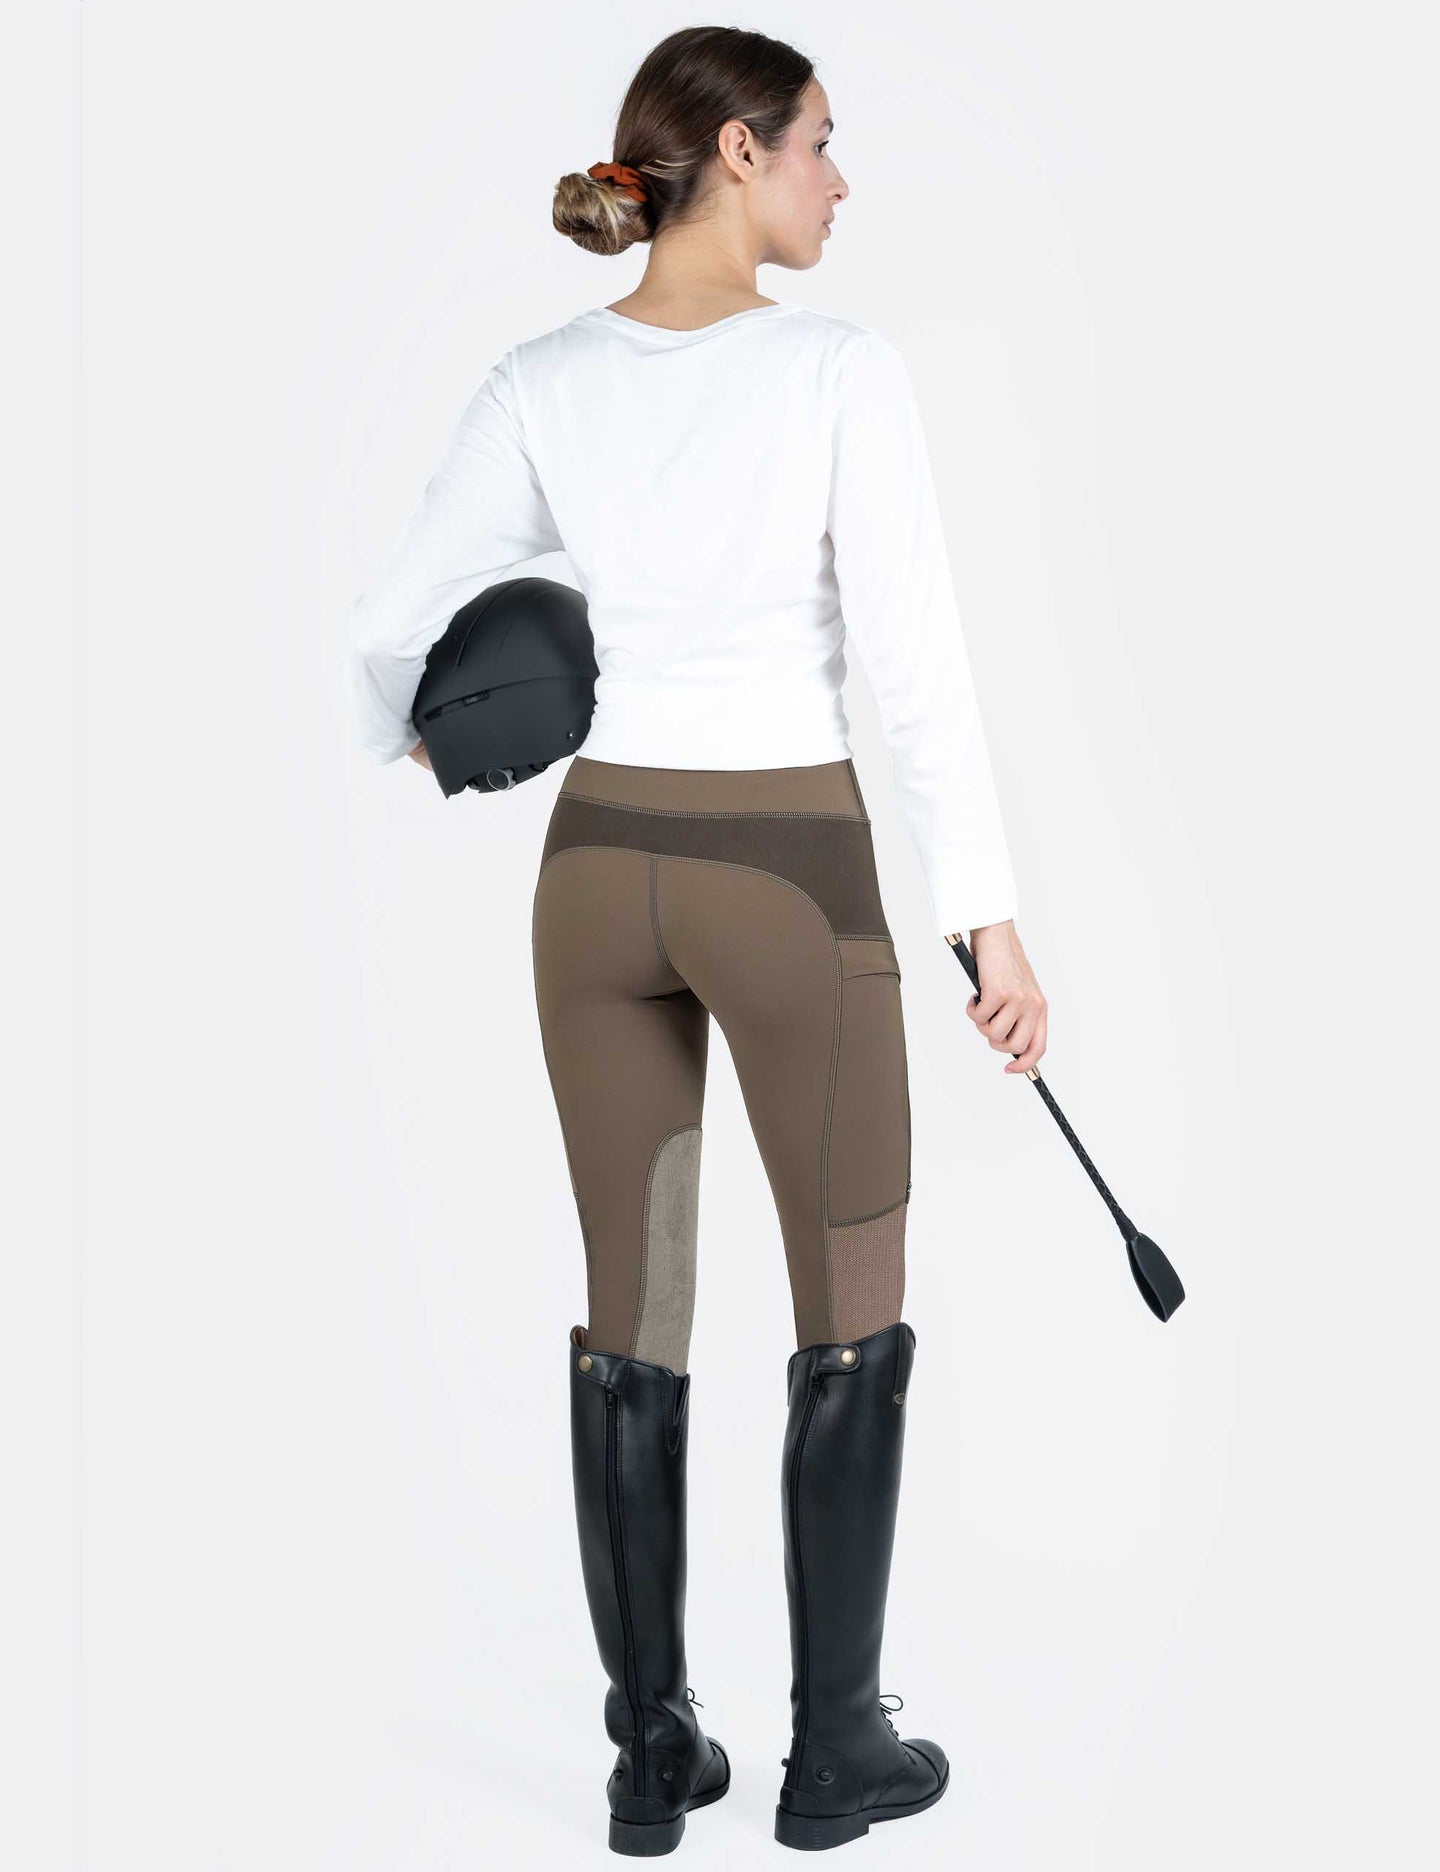 Damen-Reithose mit Reißverschlusstaschen, Kniebesatz, kühlendes Mesh-Reitsport 